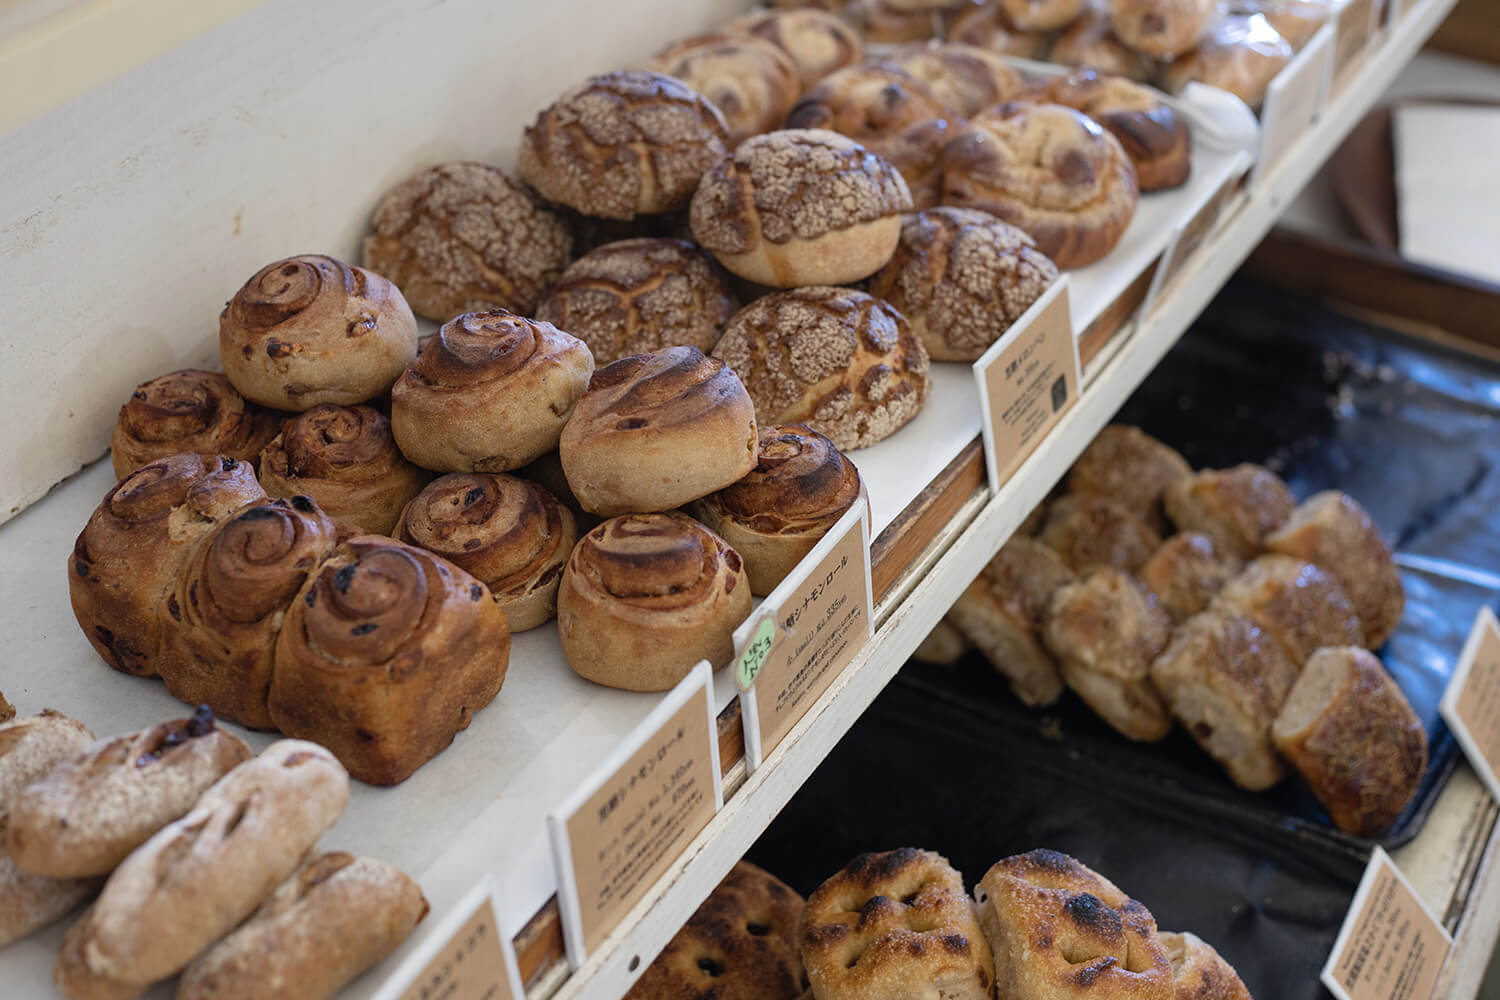 ハード系のパンが並ぶ店内。ずっしりとした重みも魅力